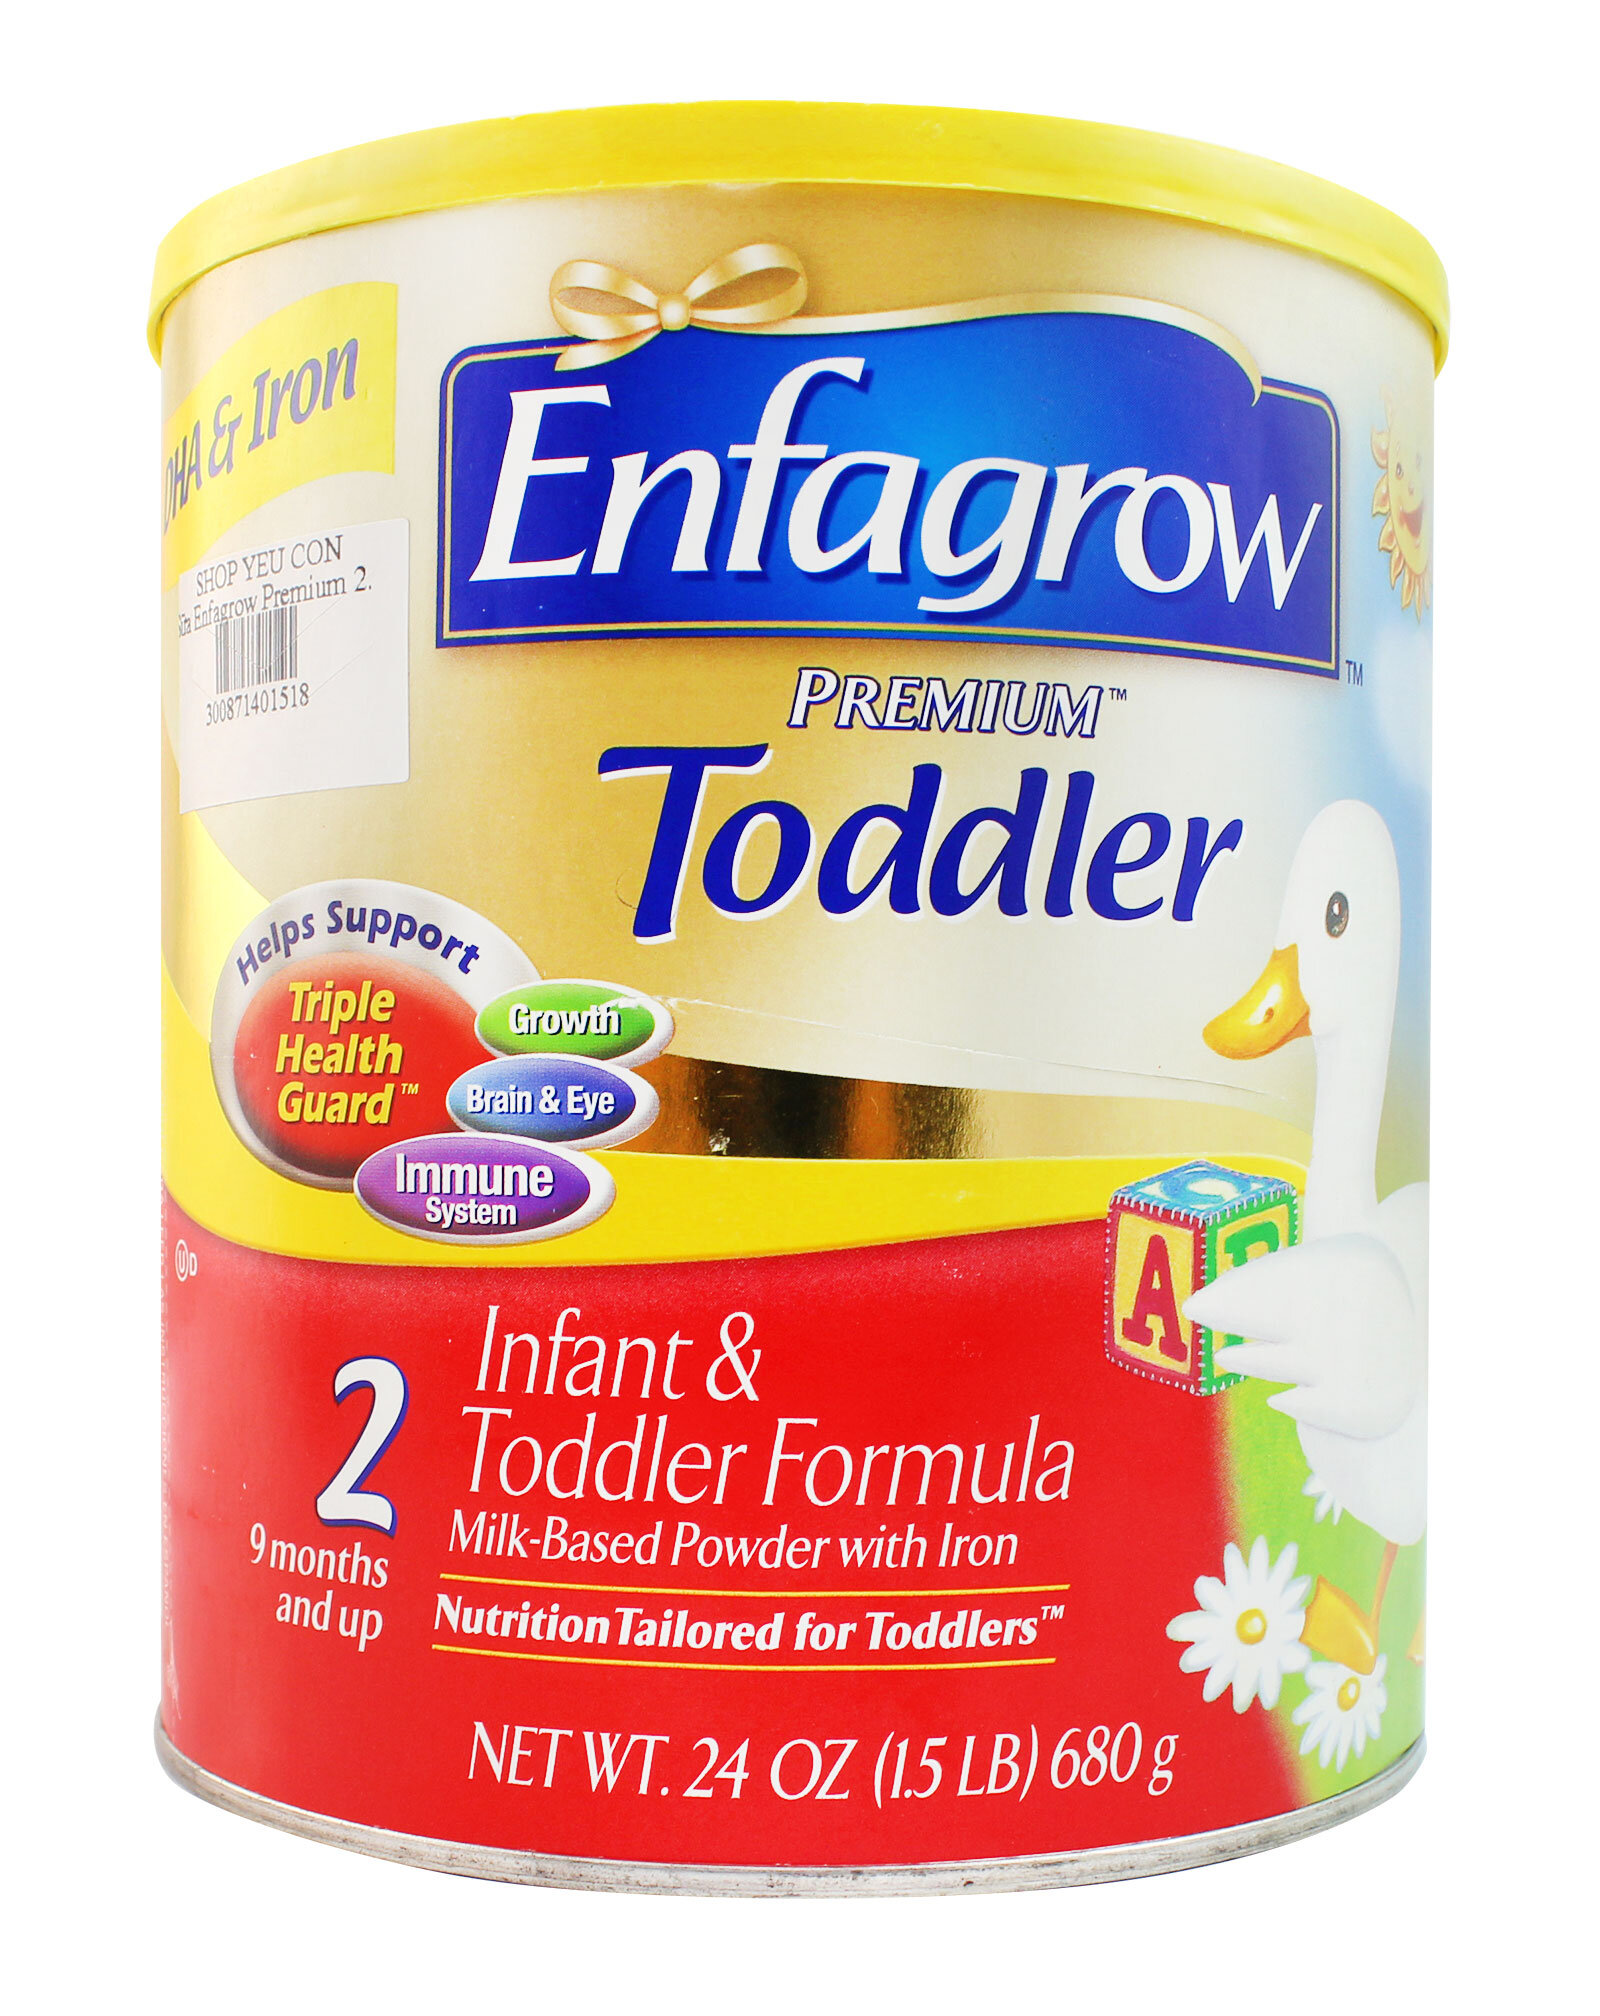 Tăng cường hệ miễn dịch với Enfagrow Premium Todder 2